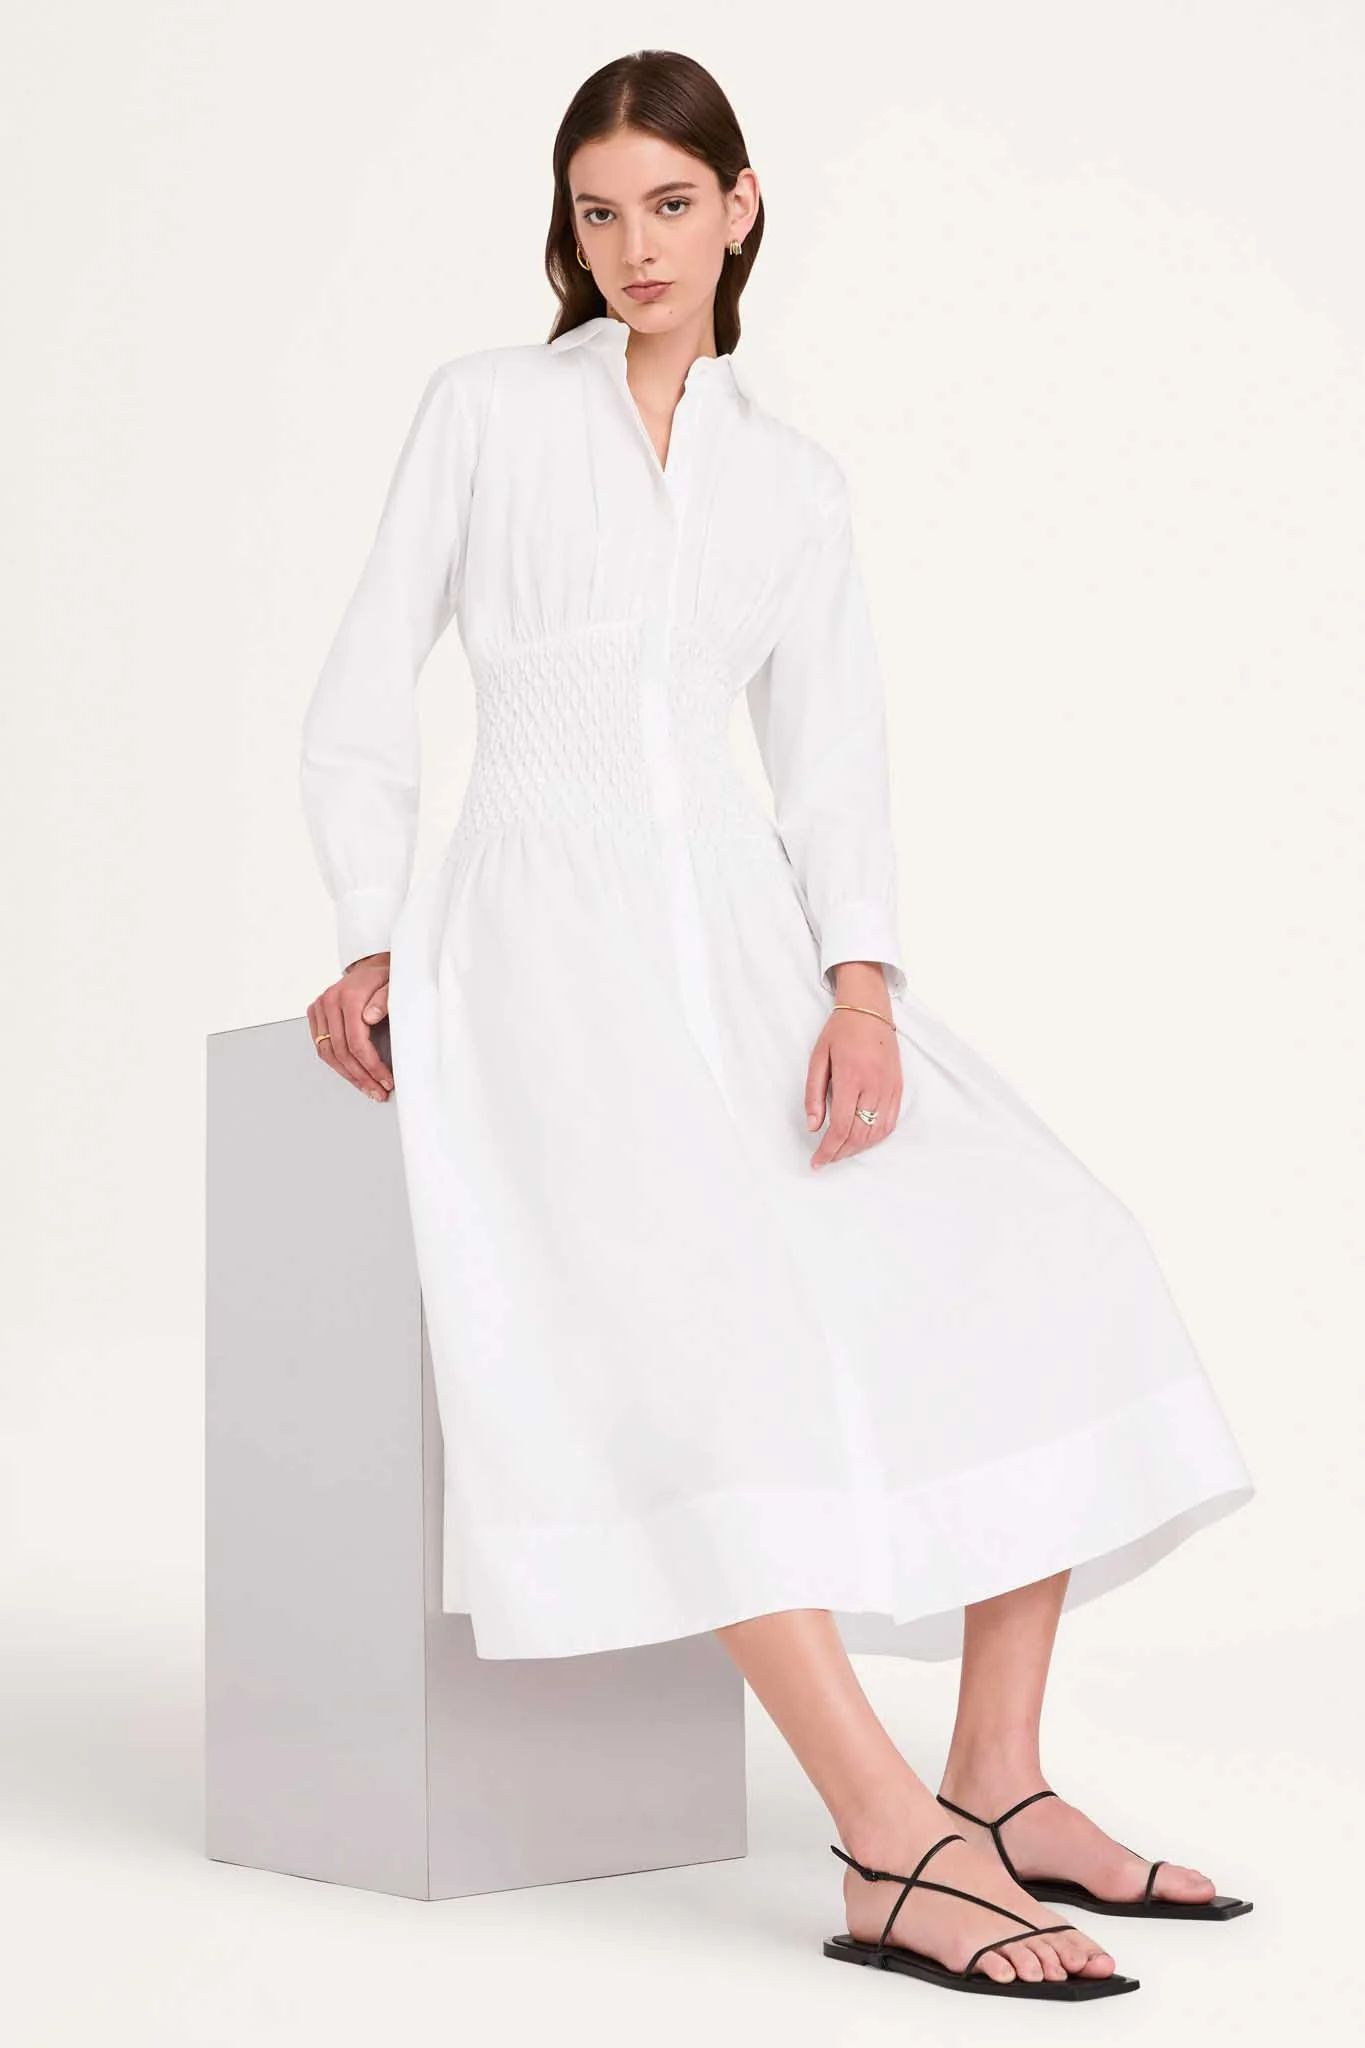 Jordaan Dress in White | Merlette NYC